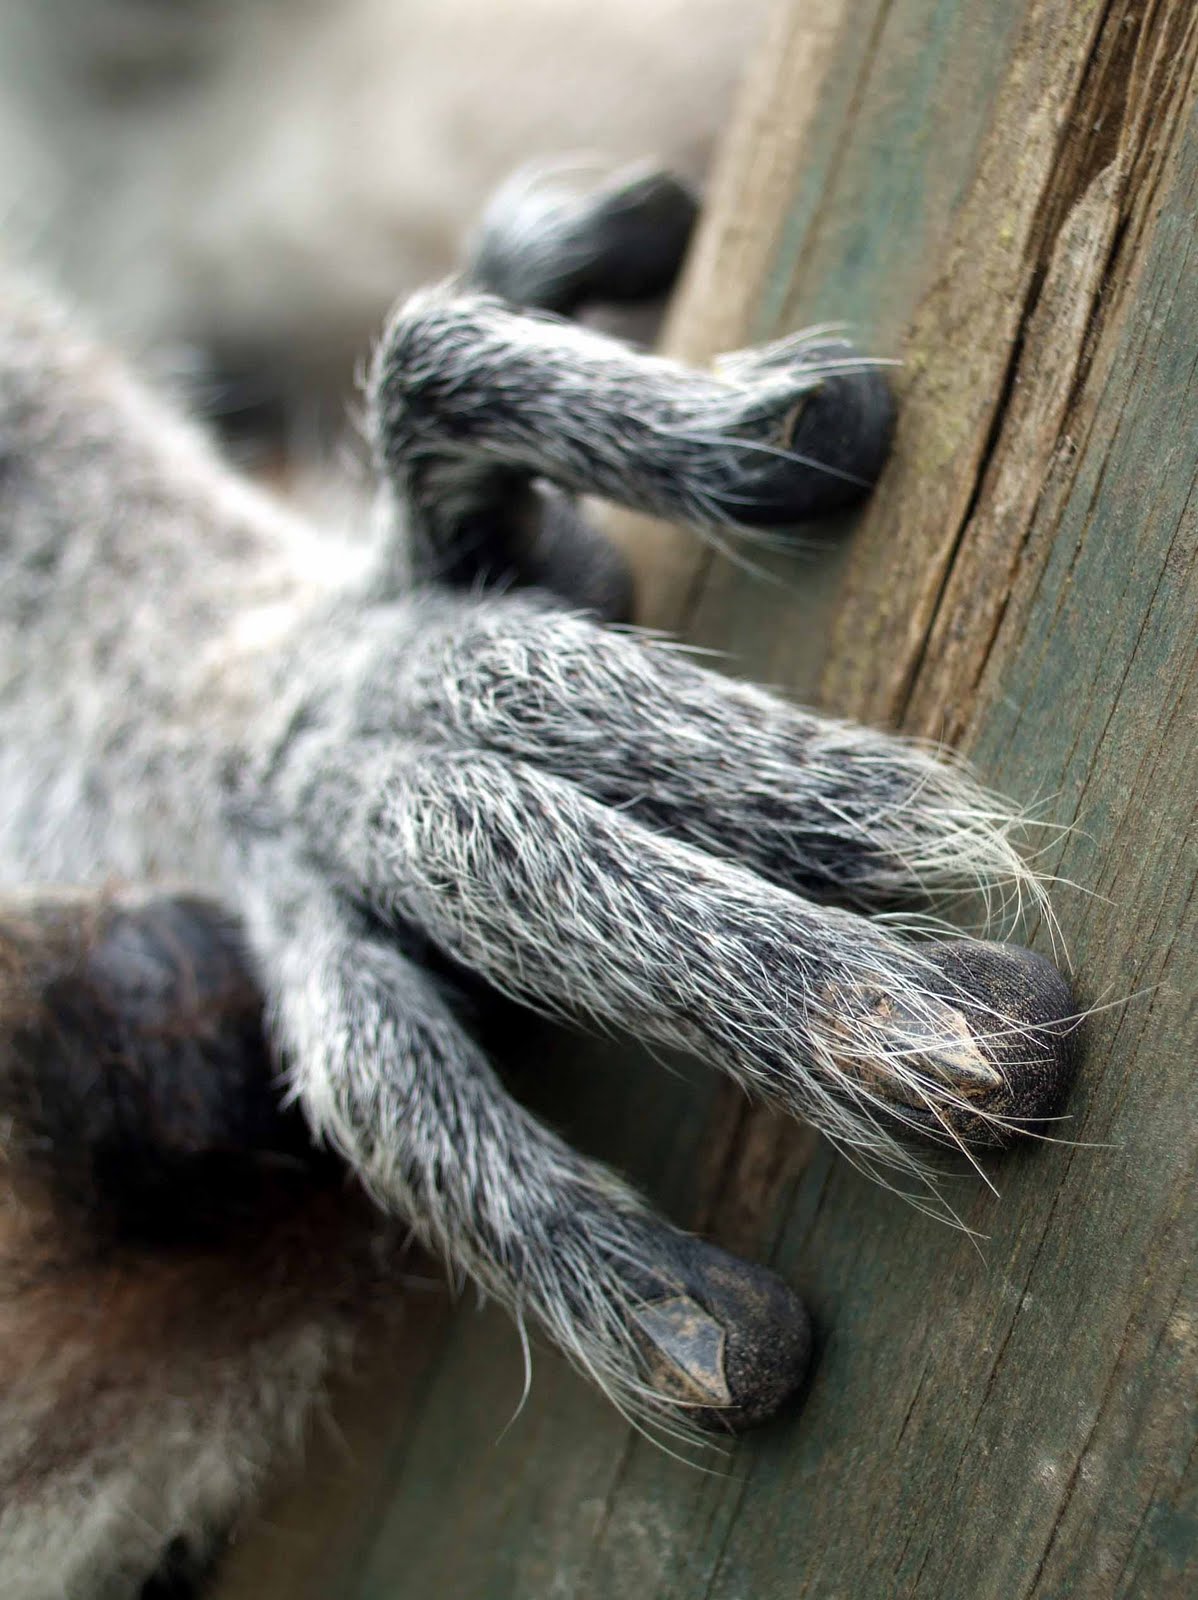 hairy lemur fingers